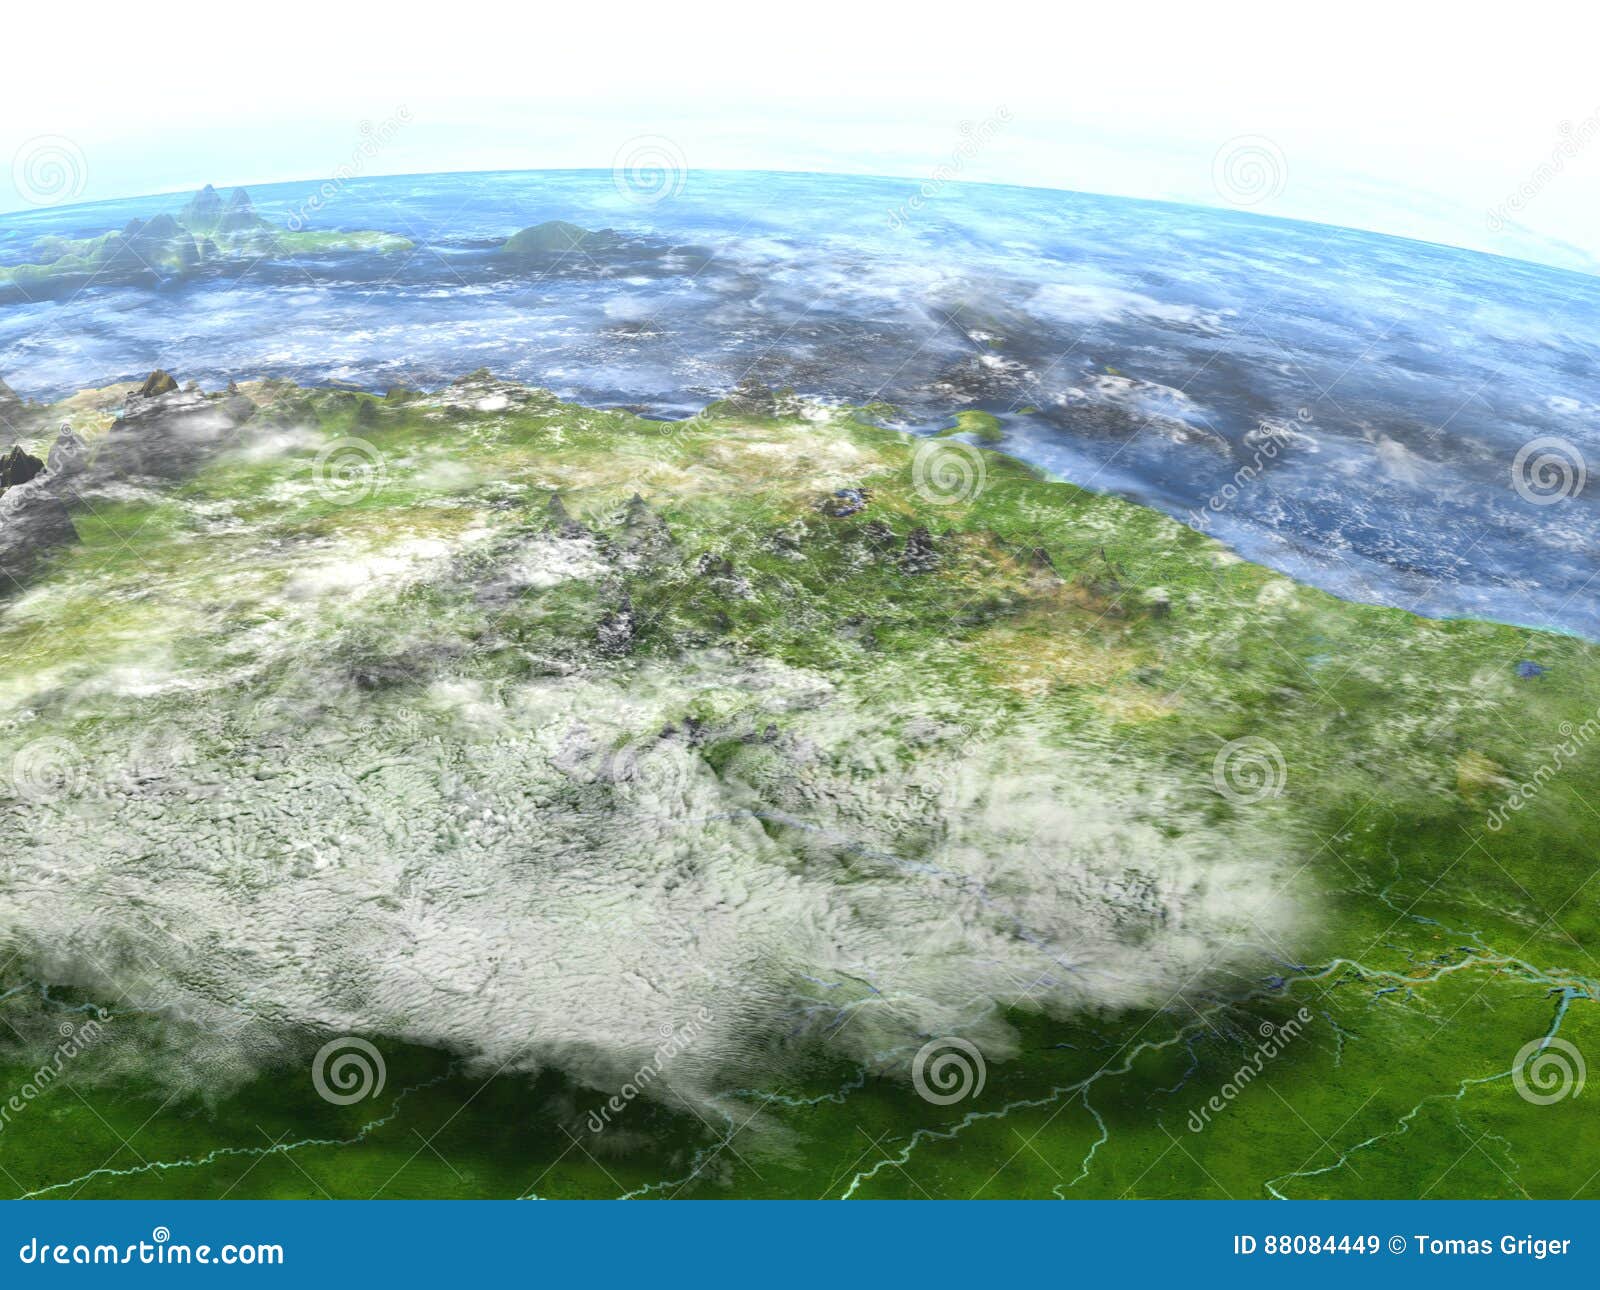 Amazon Delta On Earth Visible Ocean Floor Stock Illustration